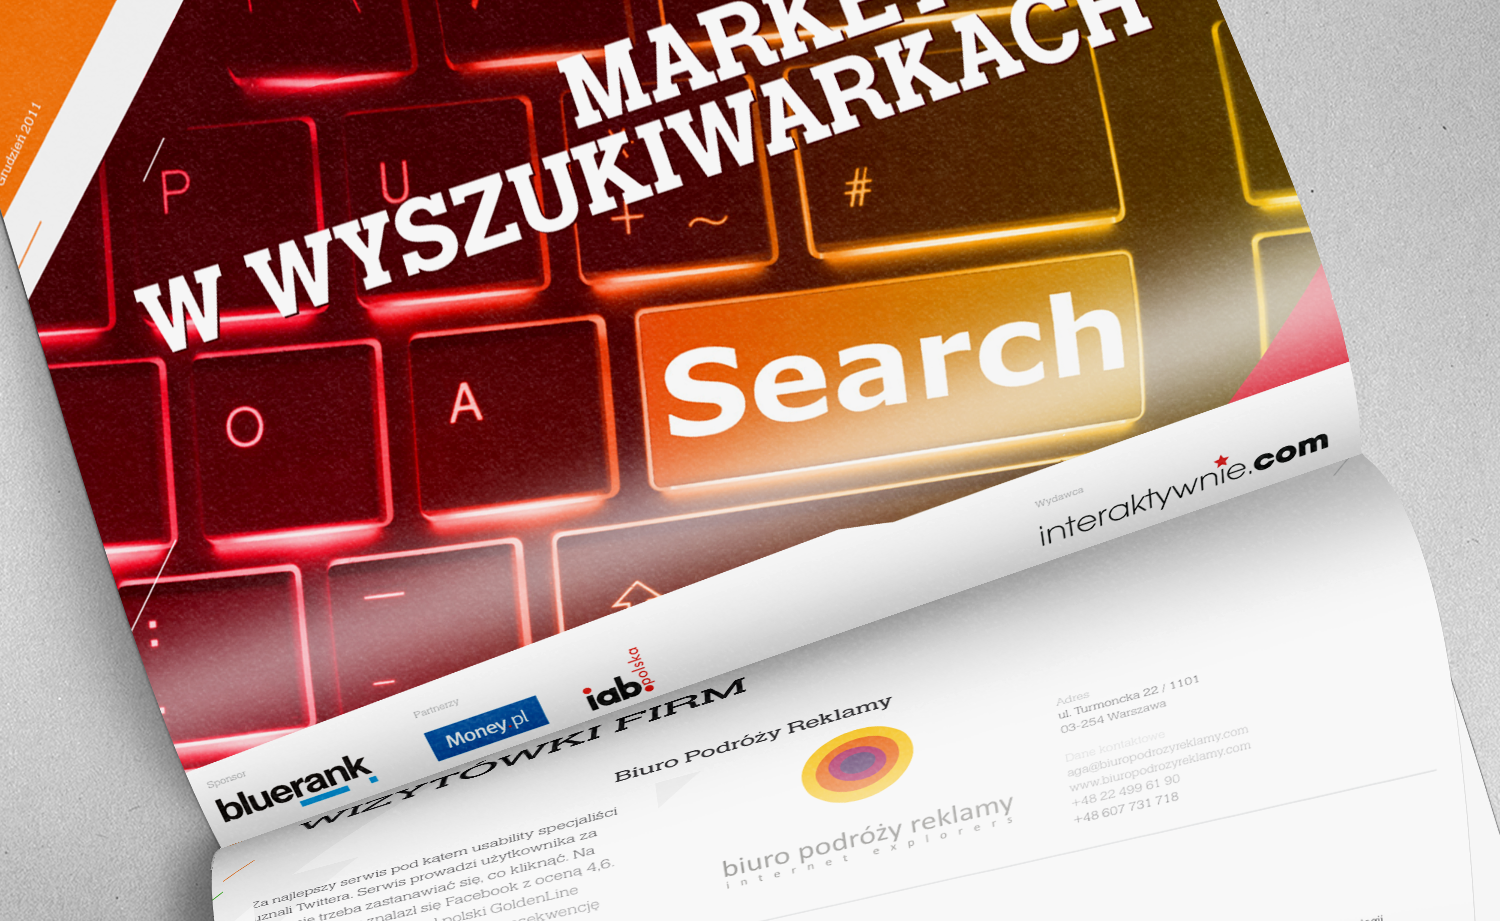 Interaktywnie.com report – Search Marketing